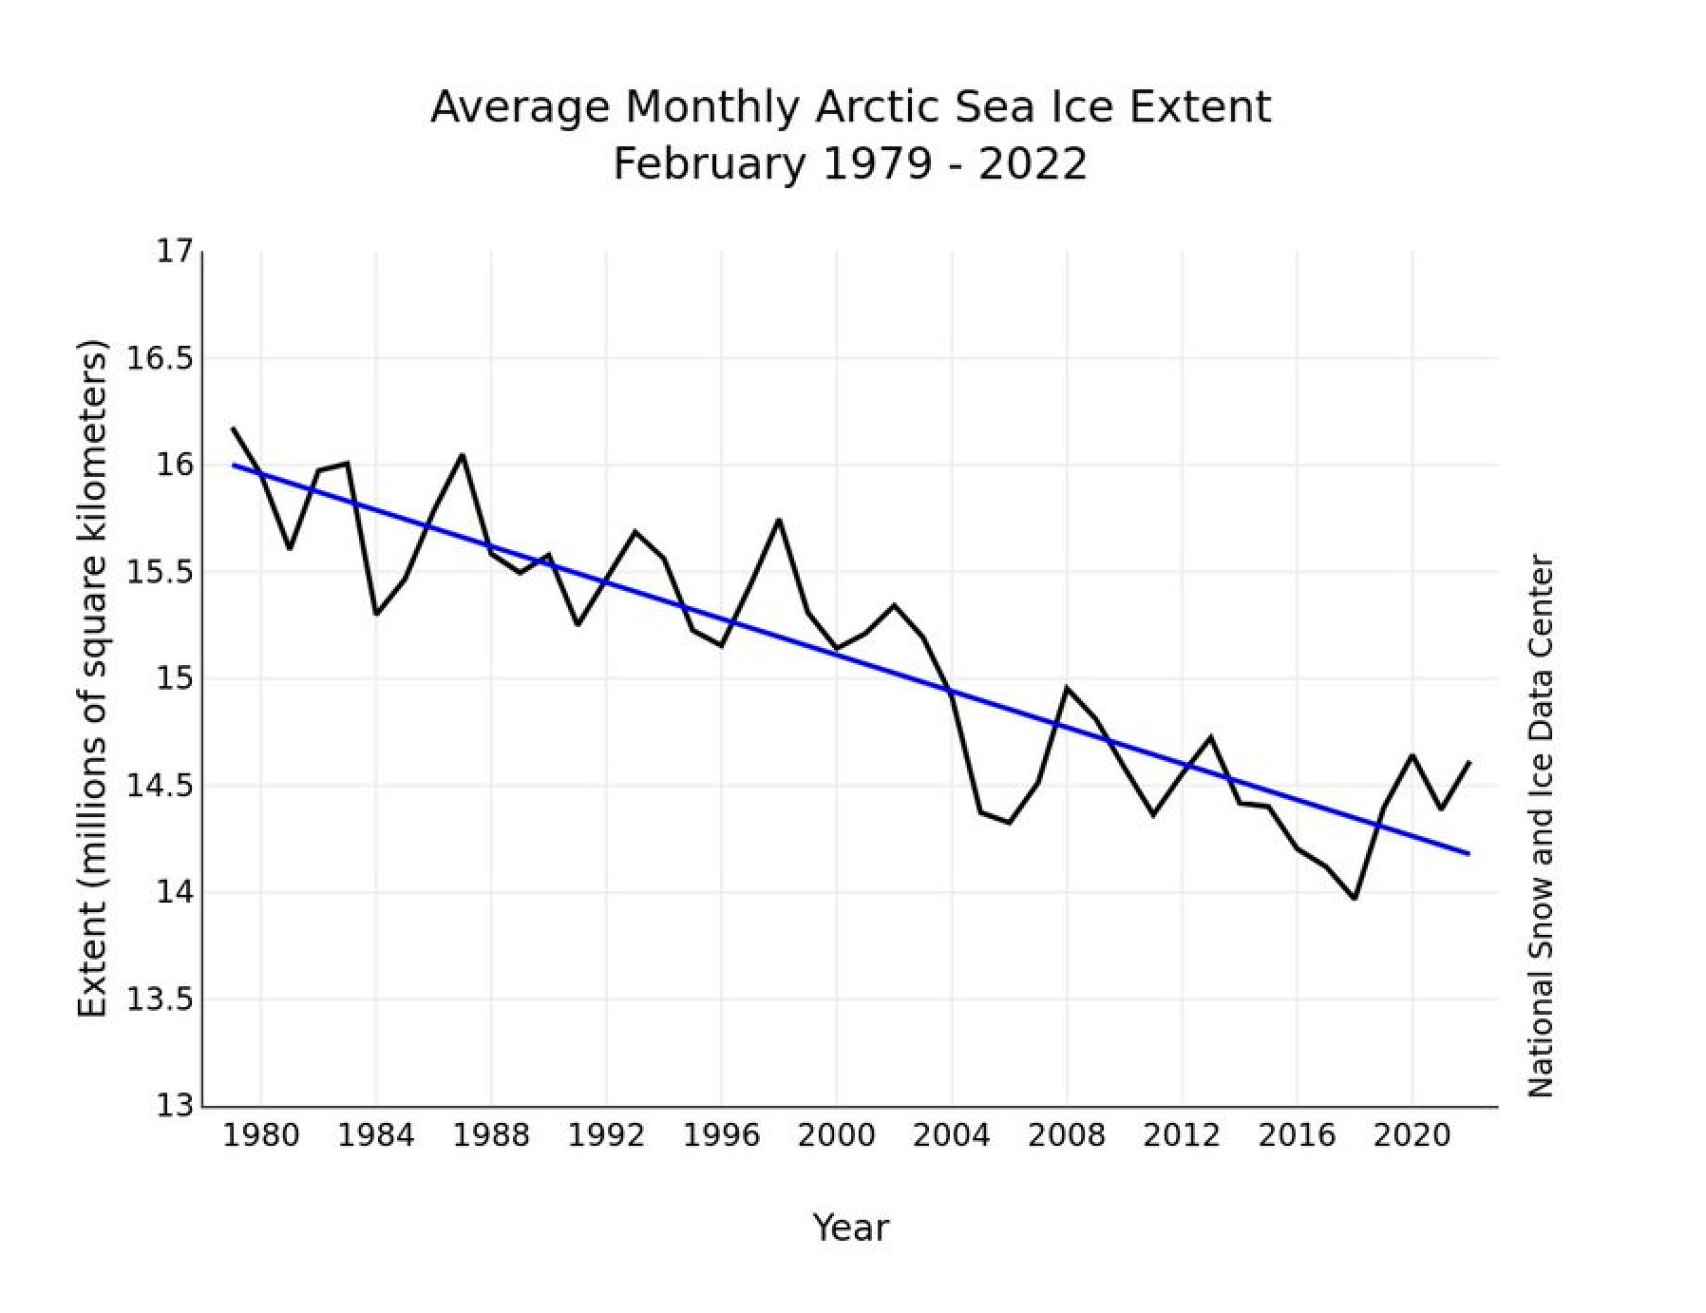 La pérdida del hielo anual en el Ártico desde 1979 hasta 2020.